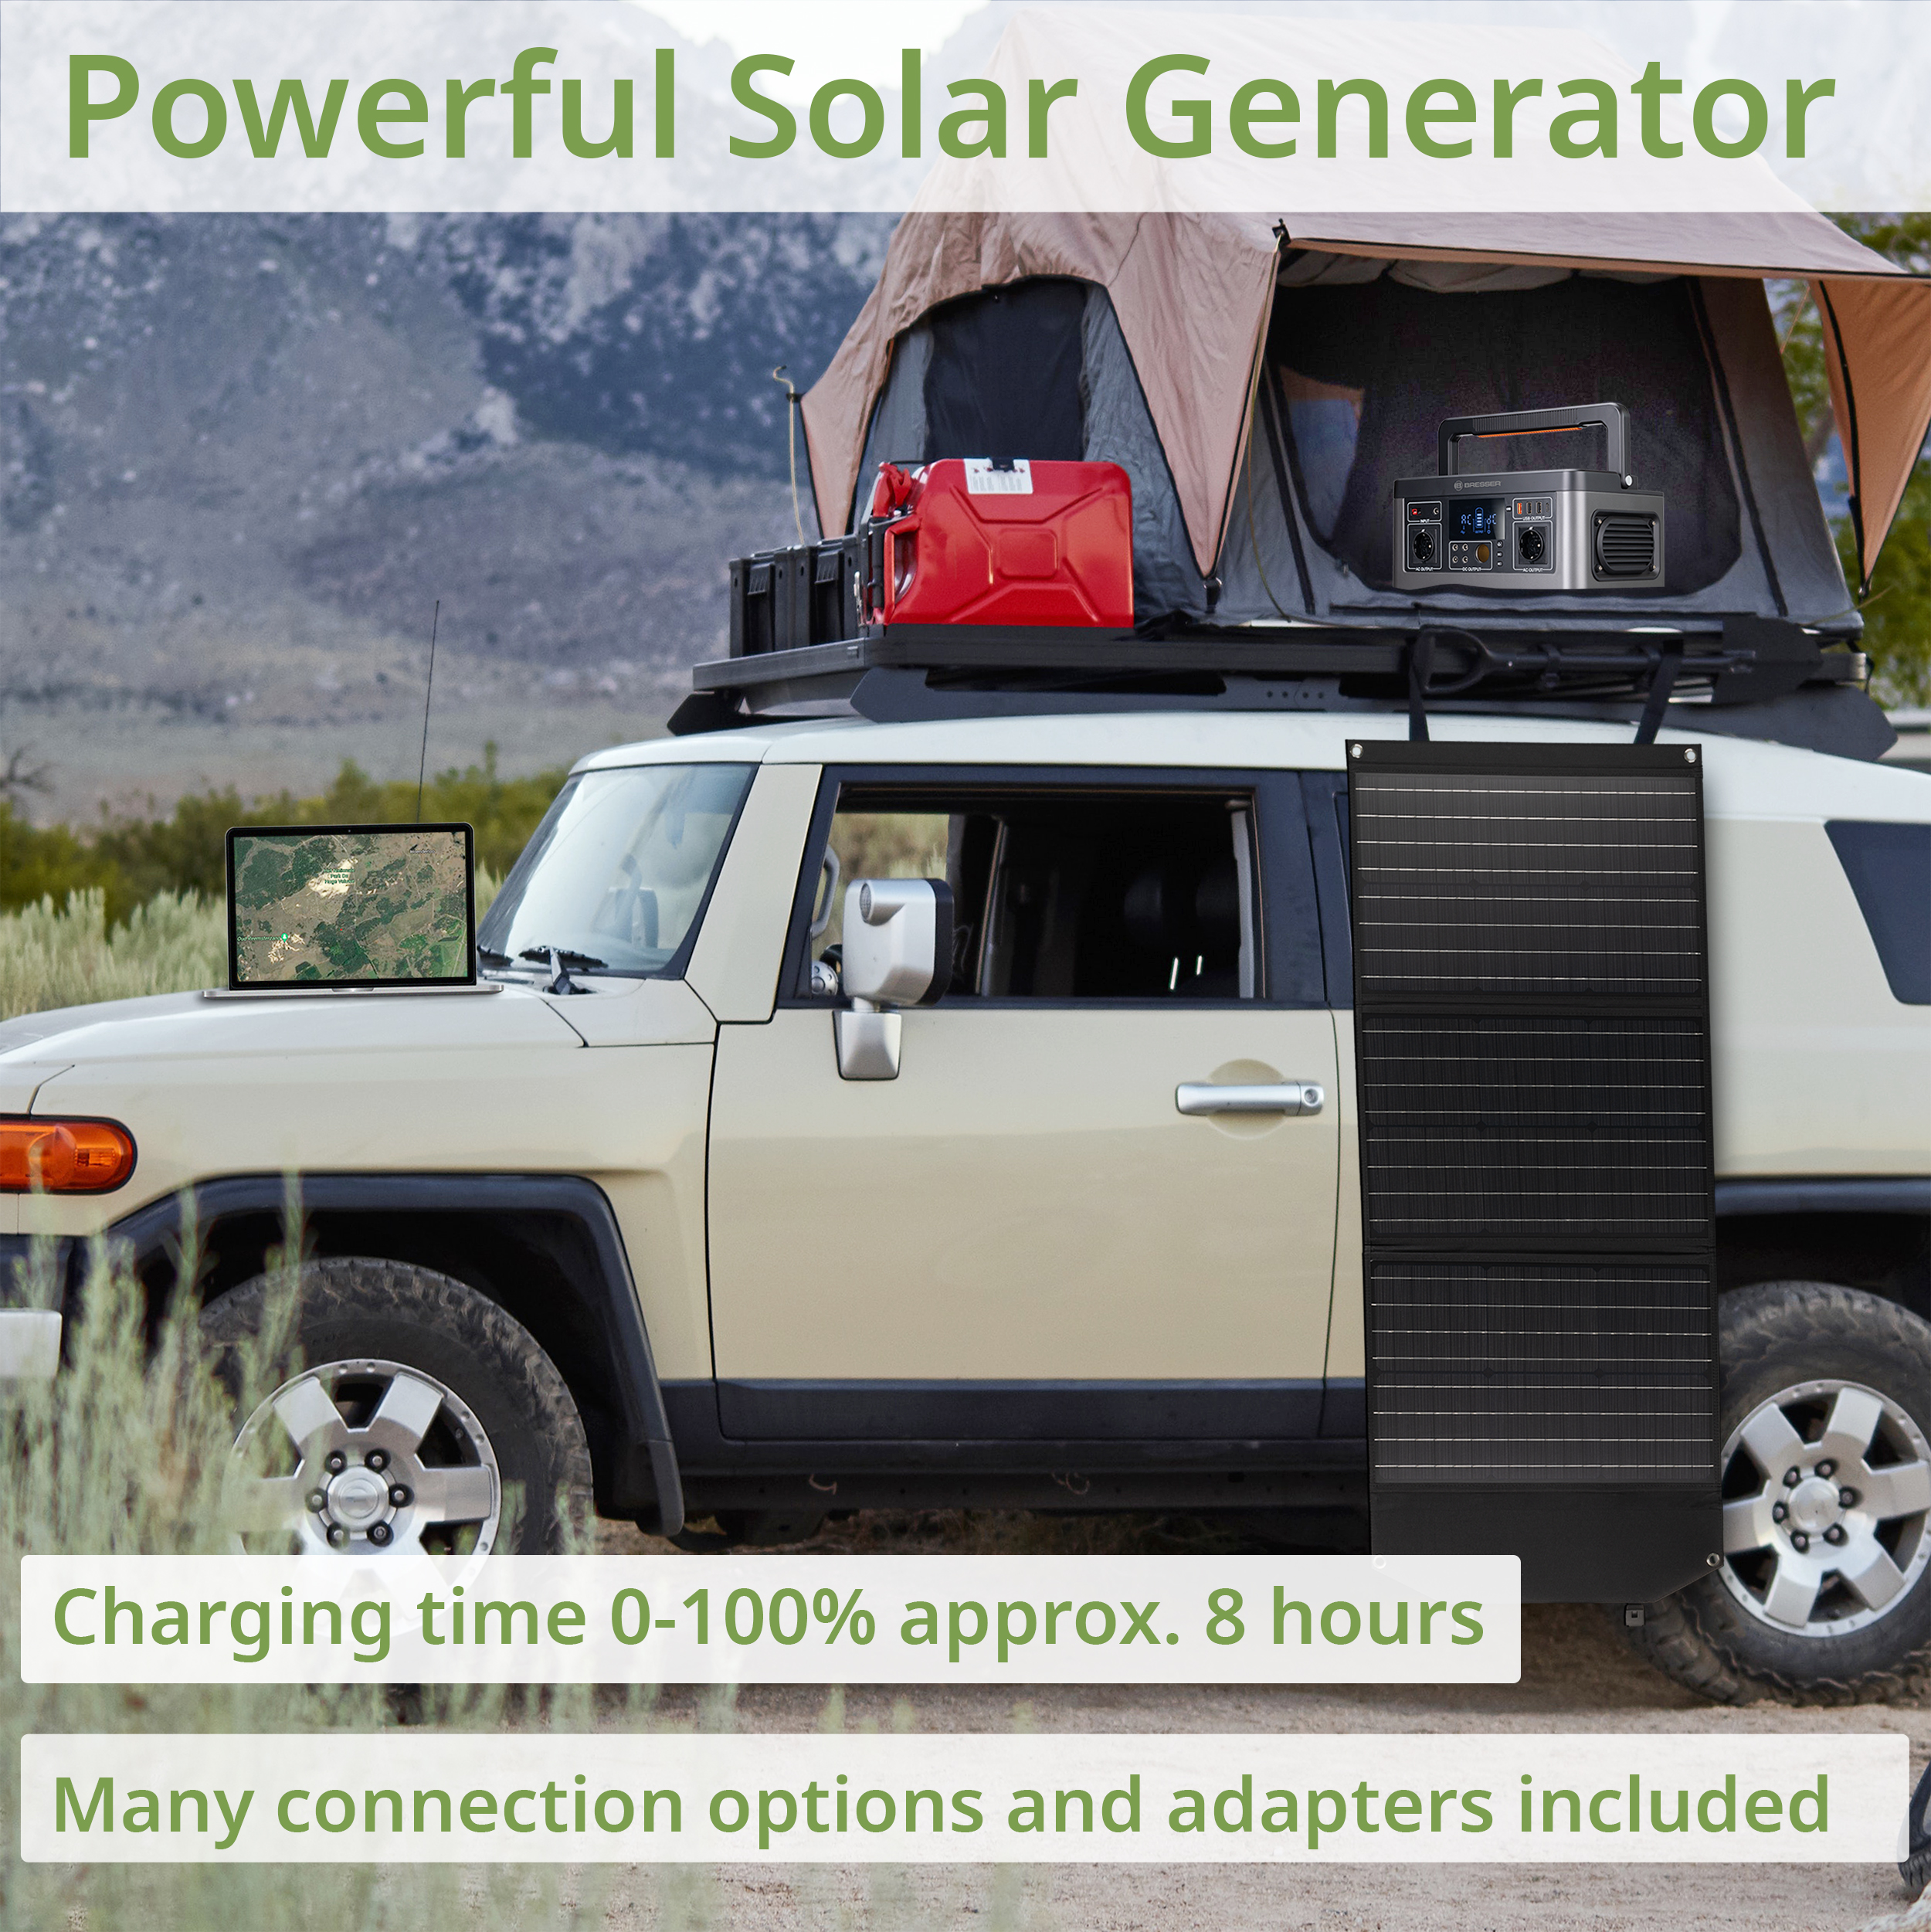 BRESSER Set Mobile Power-Station 500 W + Solar-Ladegerät 60 W